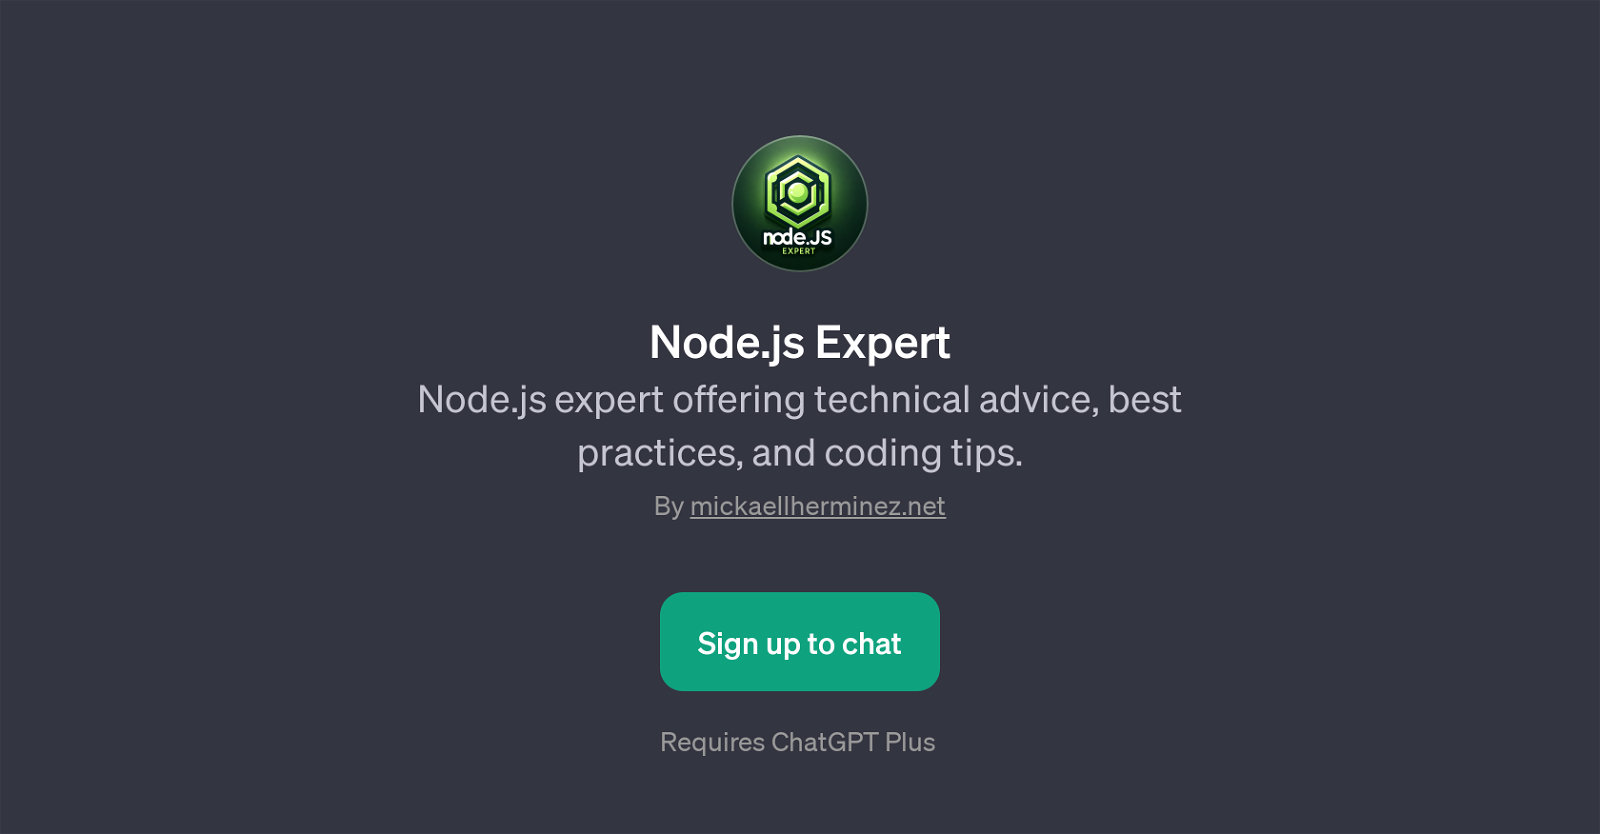 Node.js Expert website